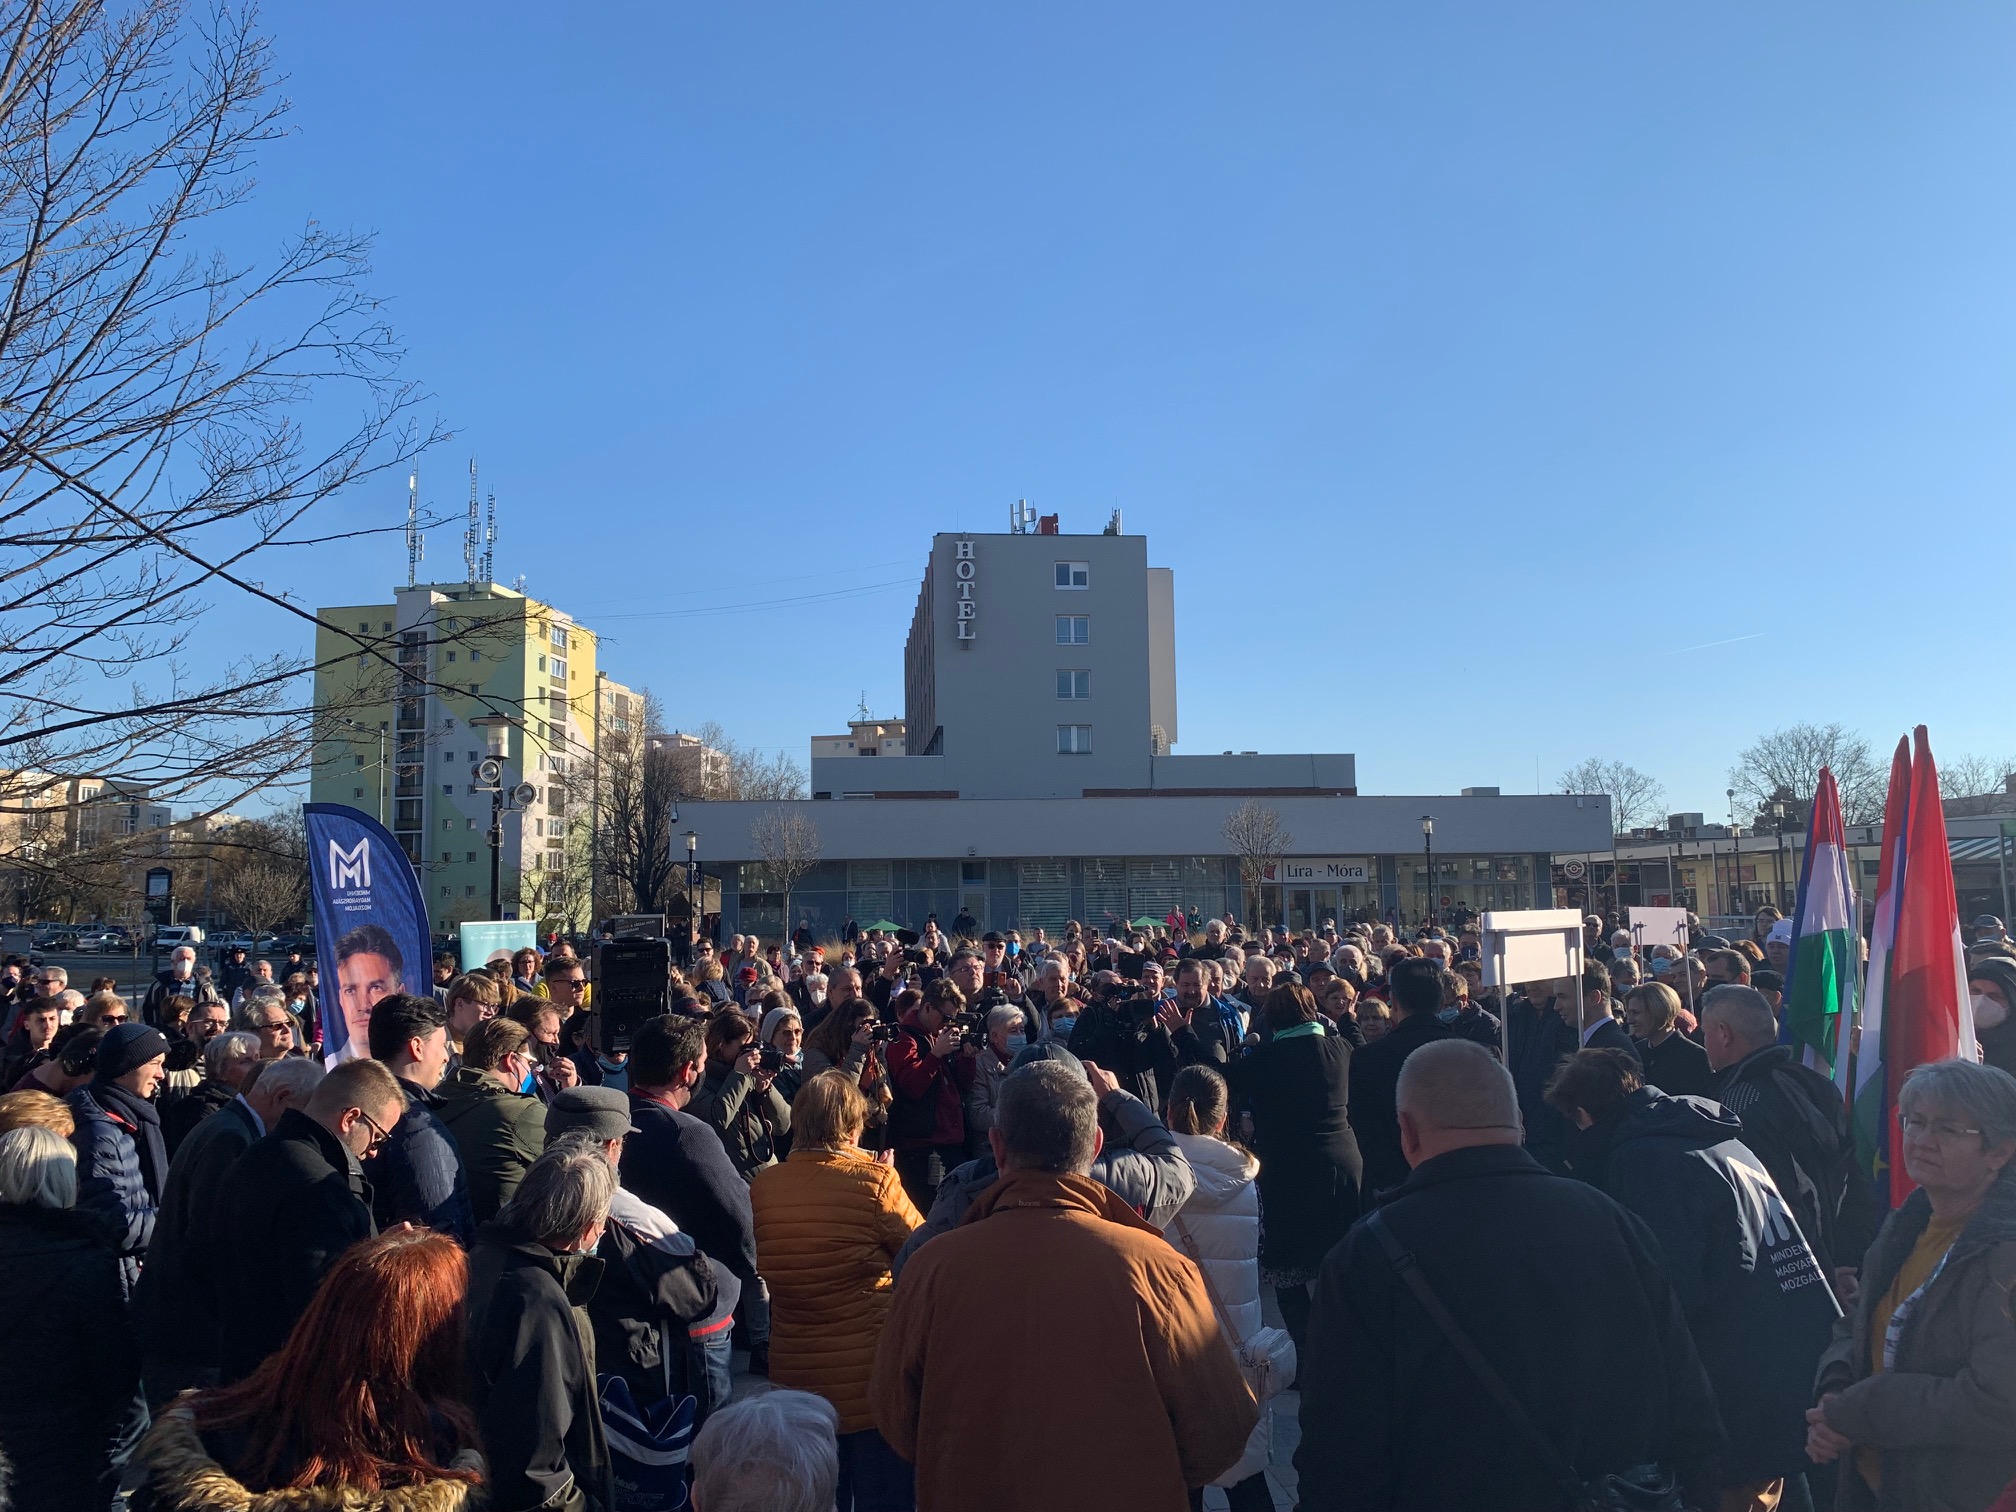 Tatabányán többen is meglepődtek a közönség méretén: elmondásuk szerint bár ez egy ellenzéki város, nem érdeklődnek nagyon politikusok iránt.